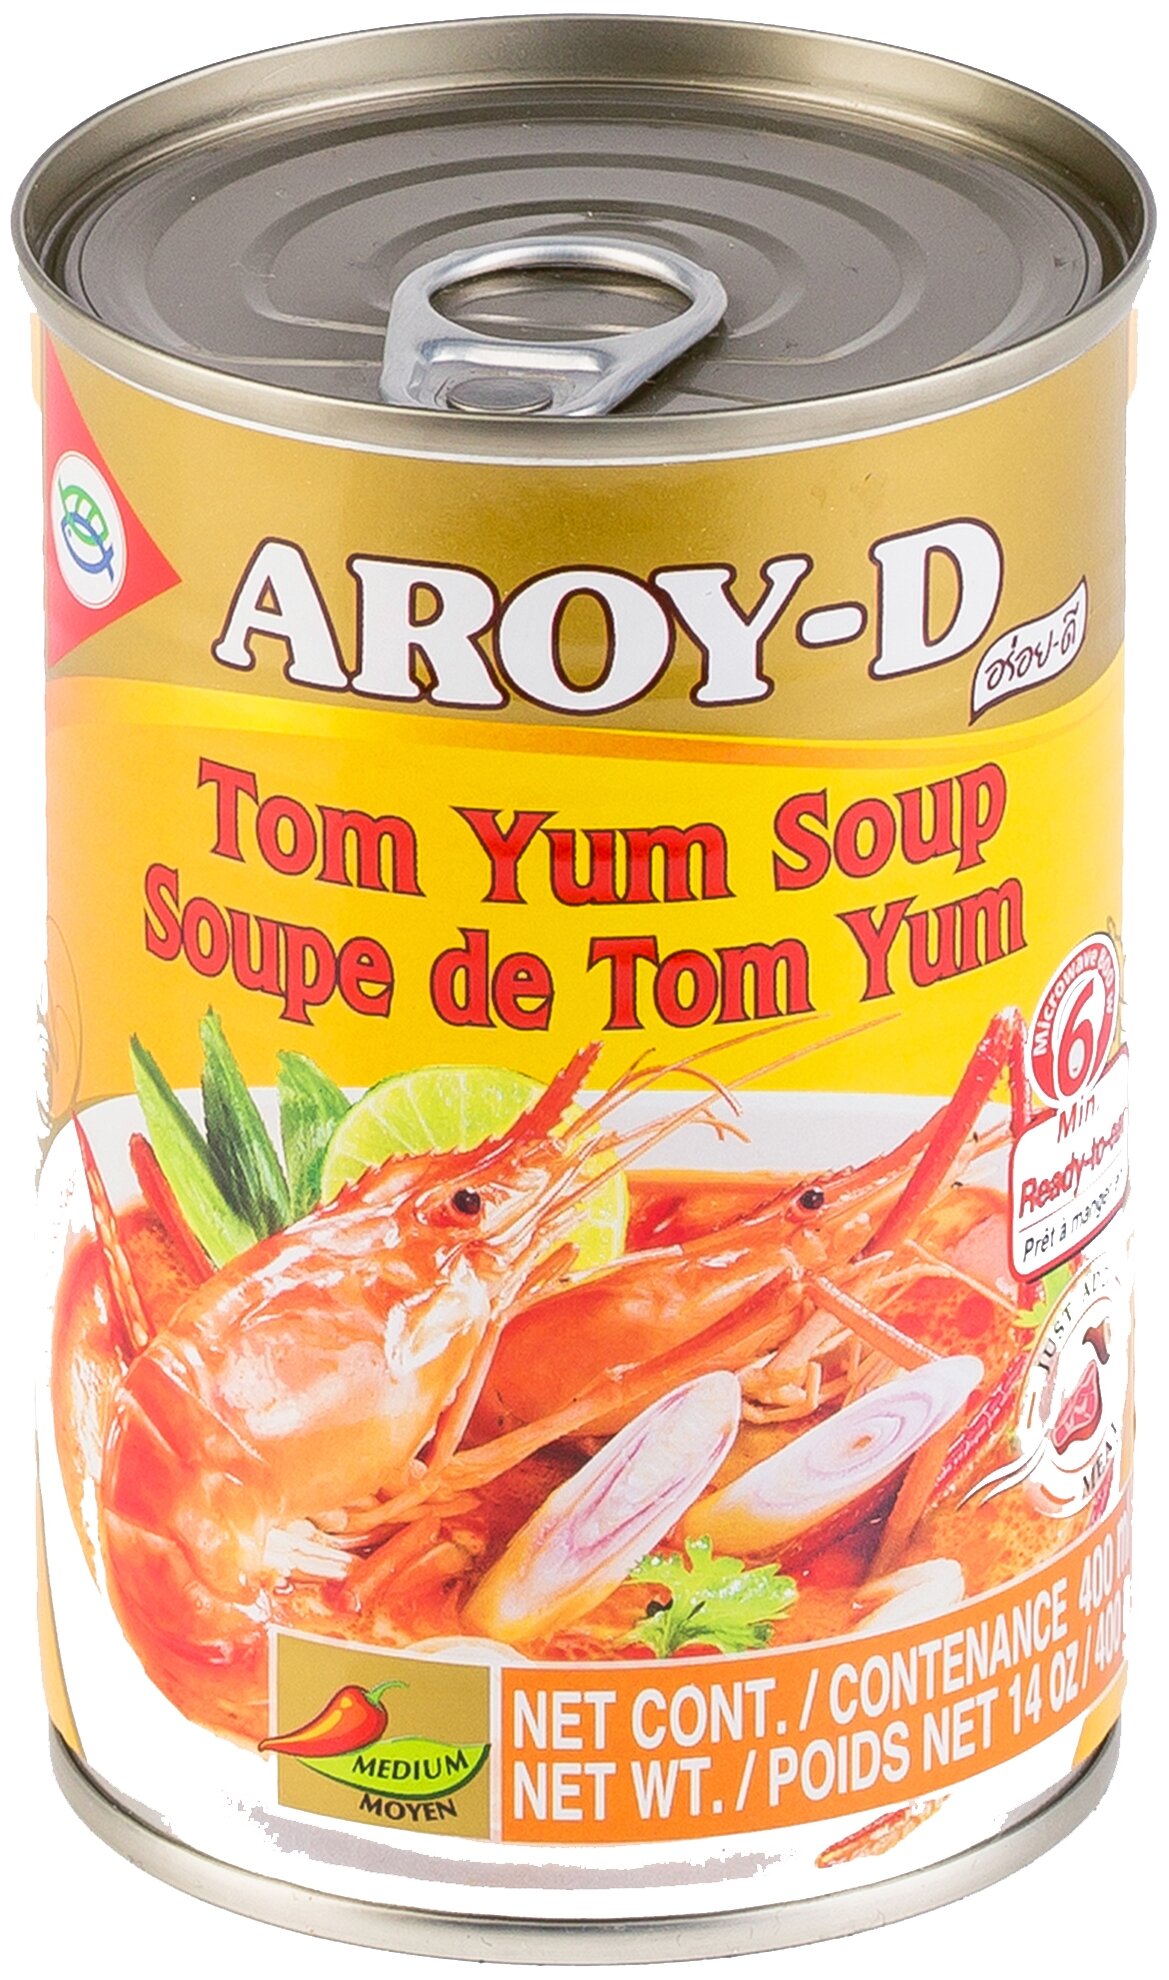 Суп Том Ям Tom Yum Soup Aroy-D 400 гр. ж/б